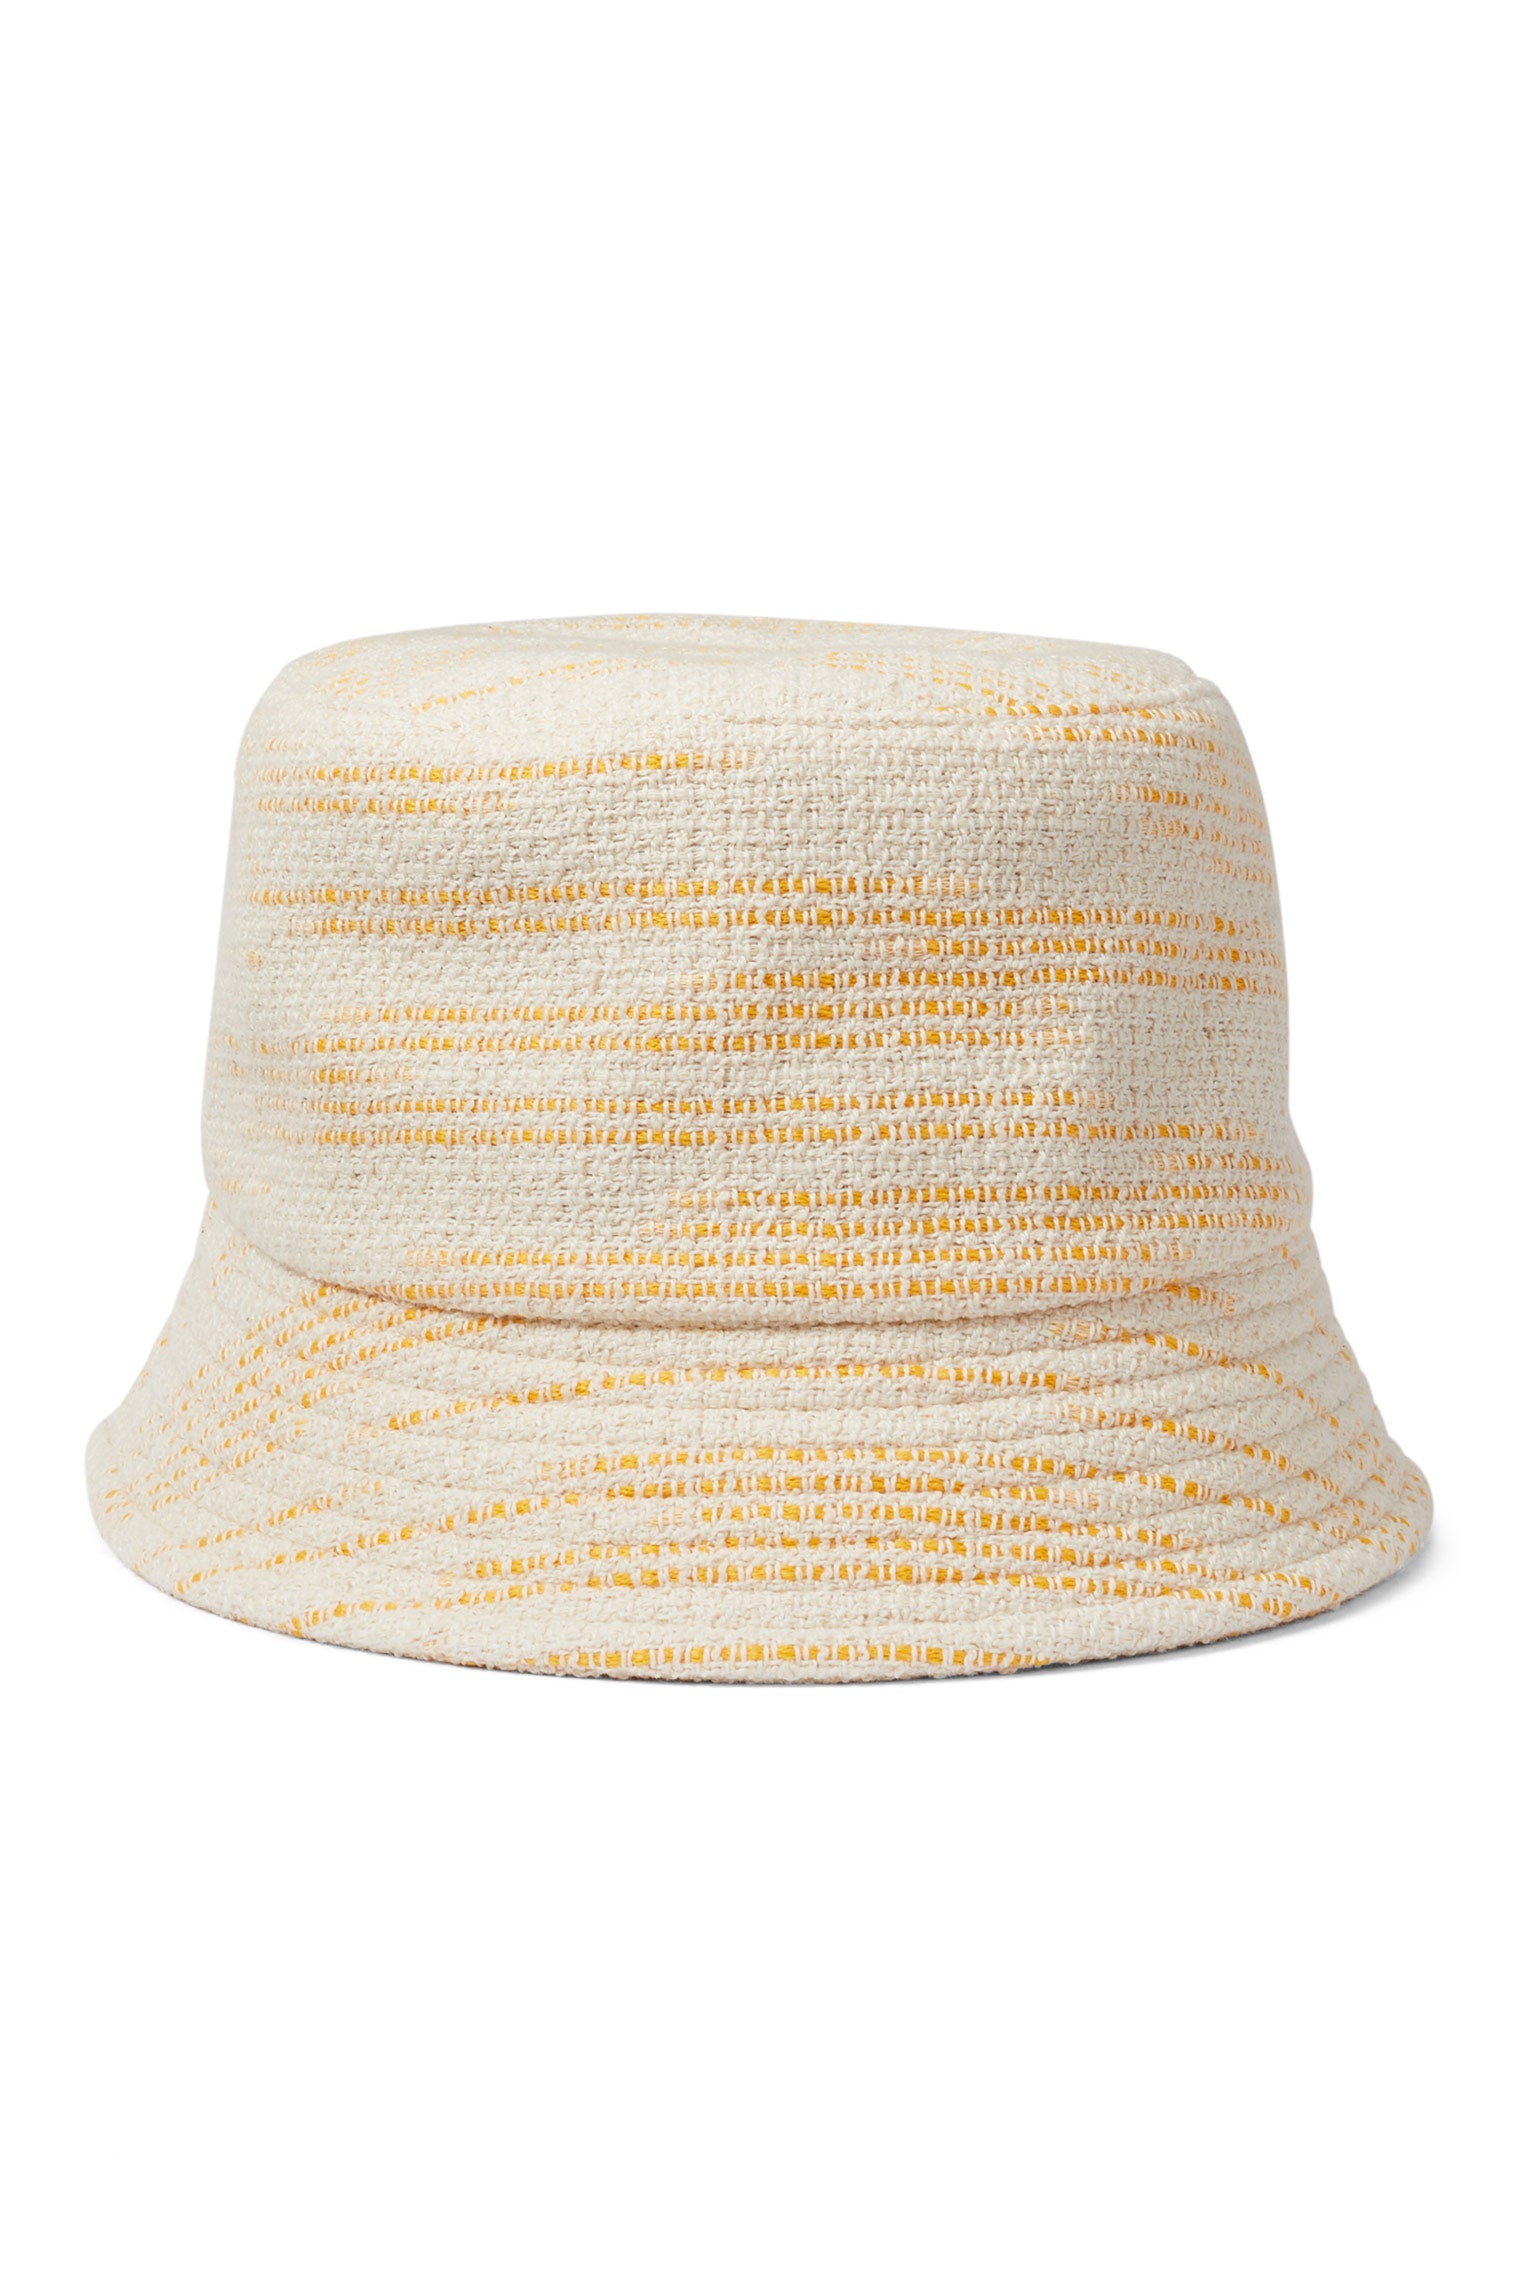 Rye Yellow Bucket Hat - Women’s Hats - Lock & Co. Hatters London UK